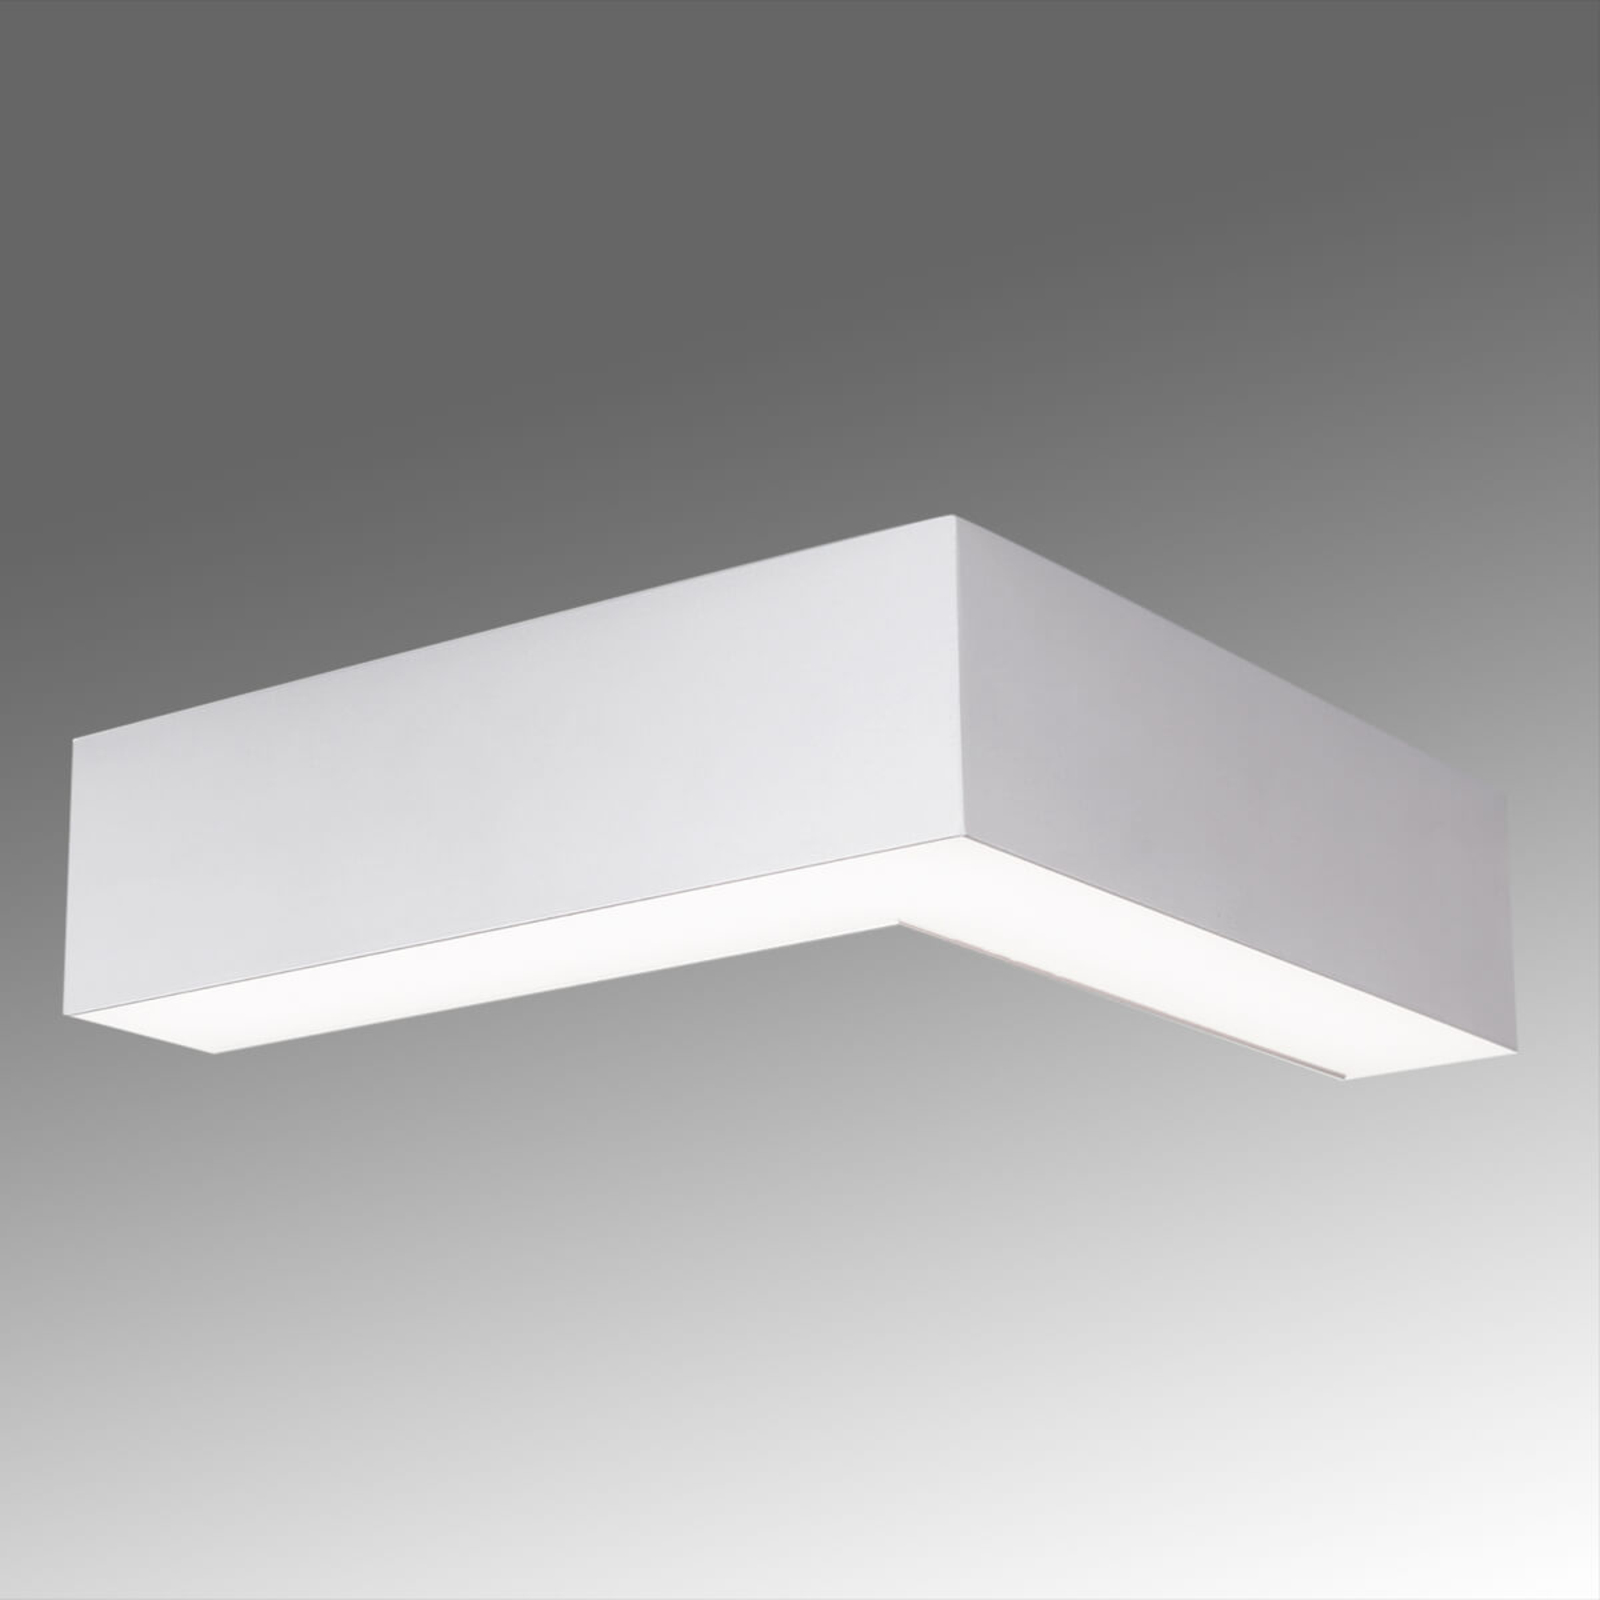 LED ceiling light Sando, suspension kit 30x30 cm